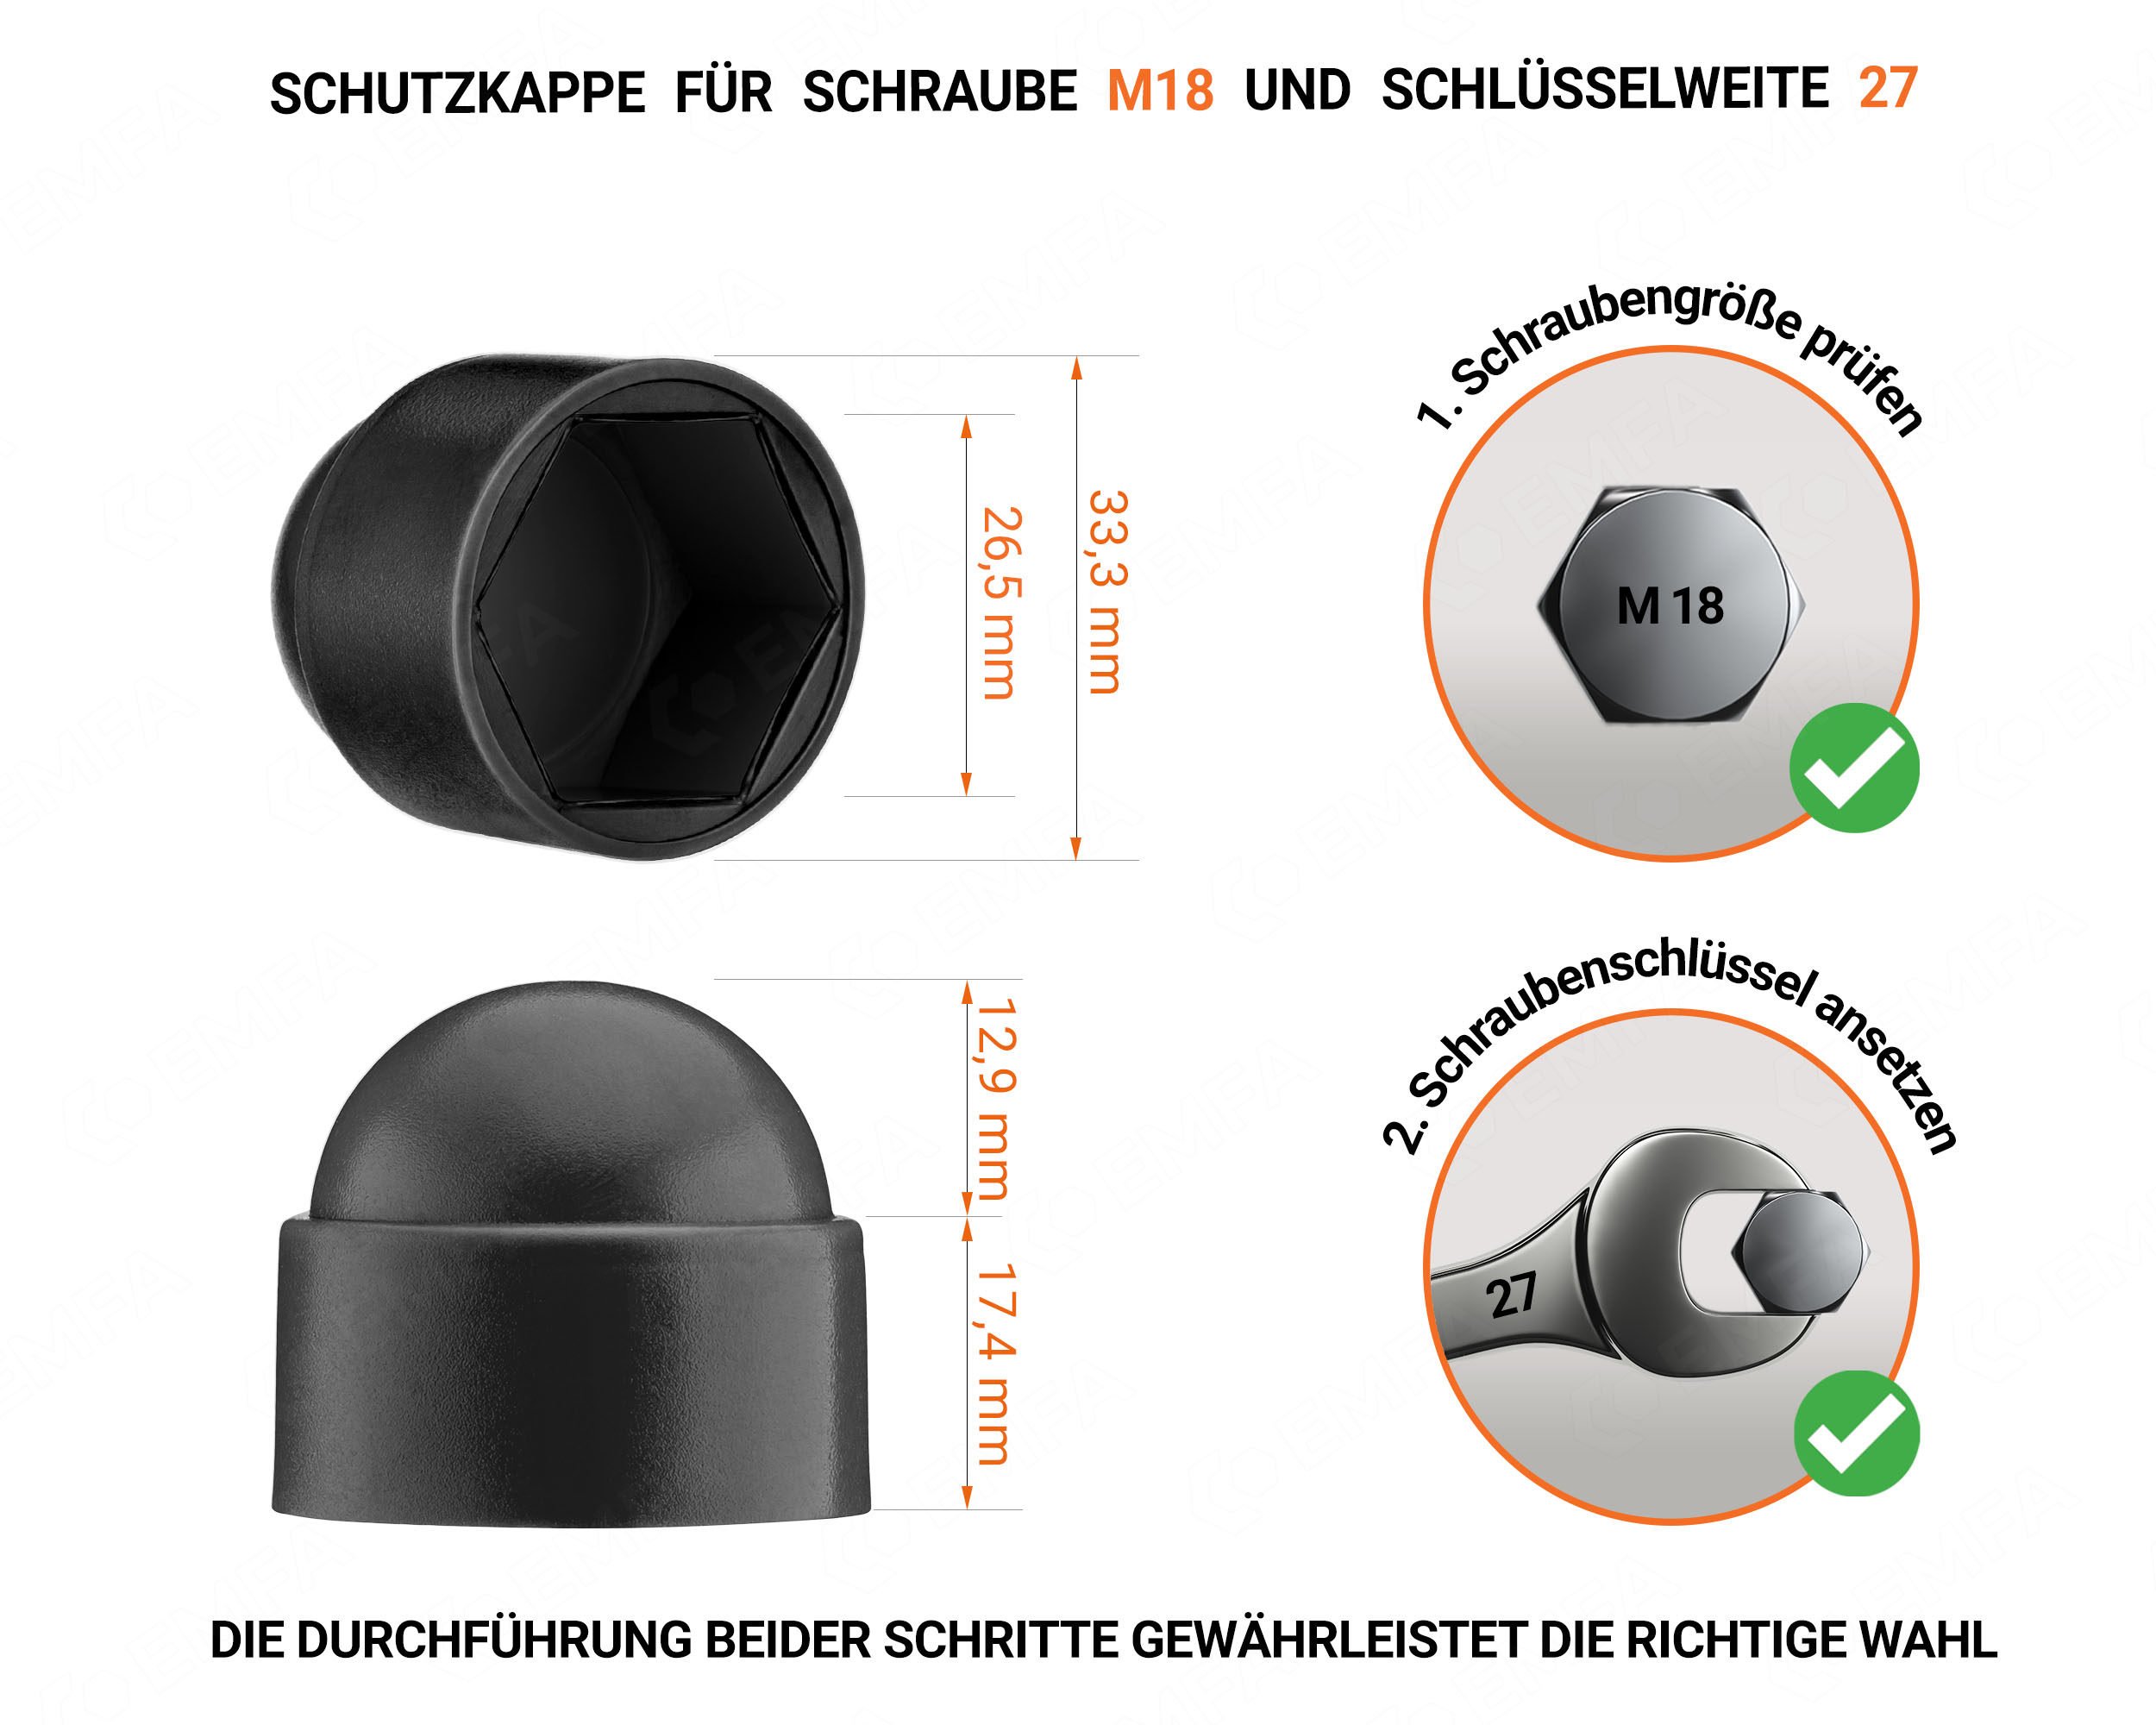 Schwarze Schutzkappen für Schrauben M18 Schlüsselweite 27 mit technischen Abmessungen und Anleitung für korrekte Messung